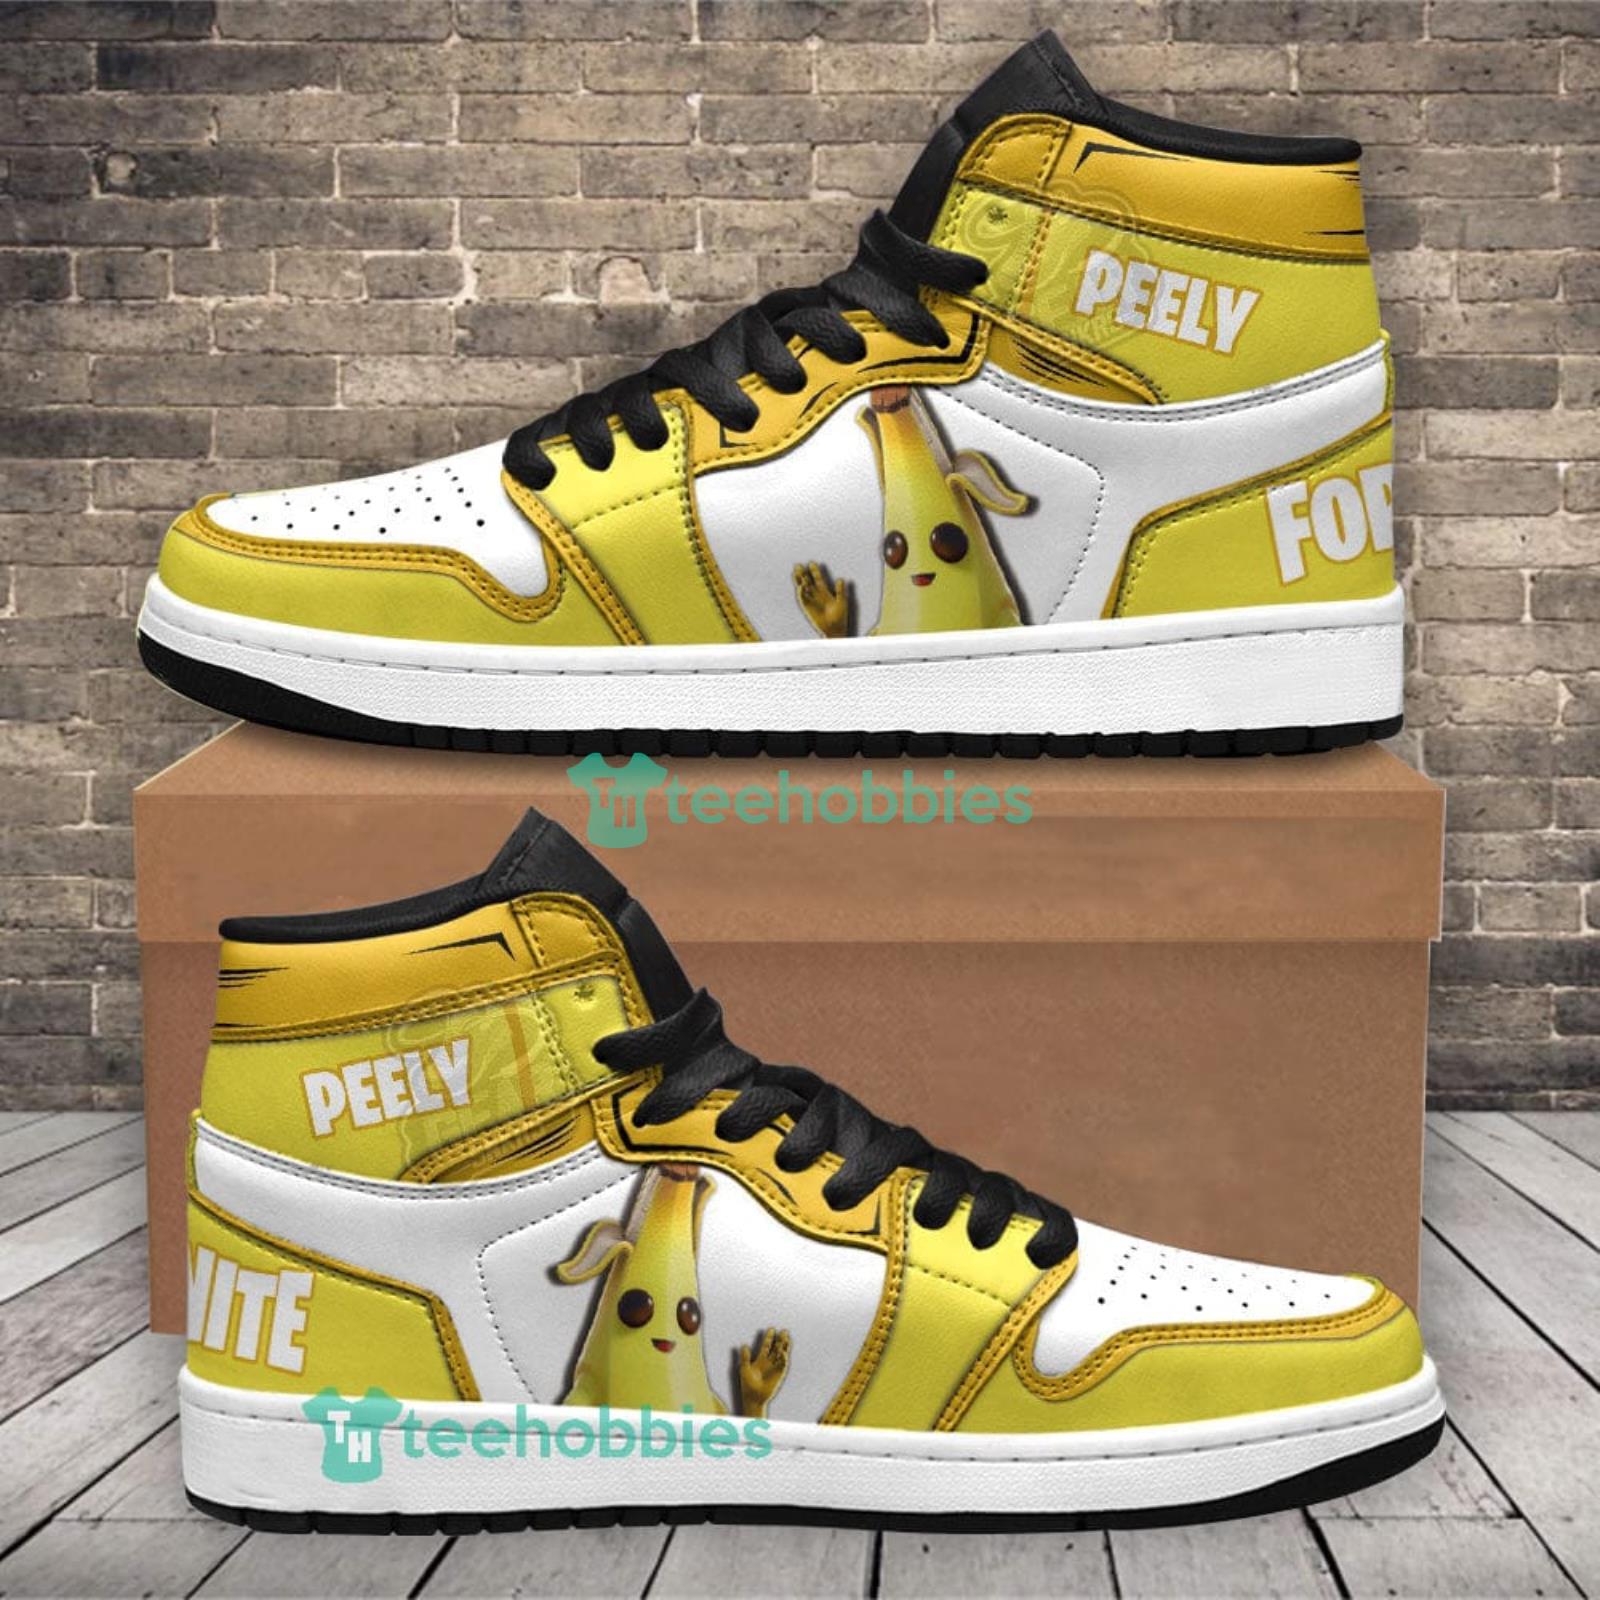 Peely Skin Air Jordan Hightop Shoes Sneakers For Men And